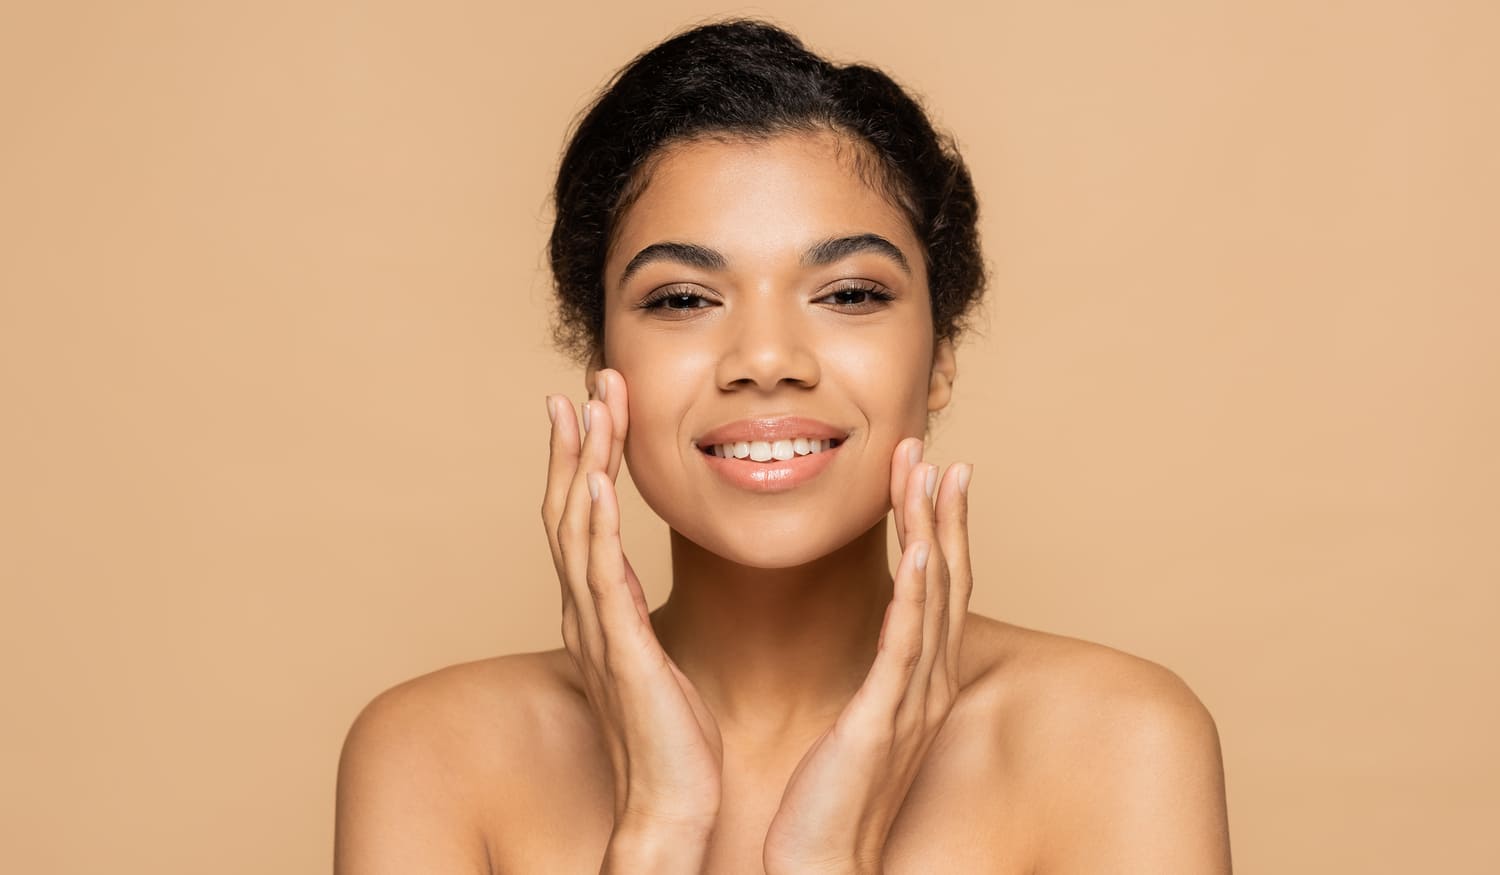 Hautbild verbessern: 11 studienbasierte Tipps für makellose Haut